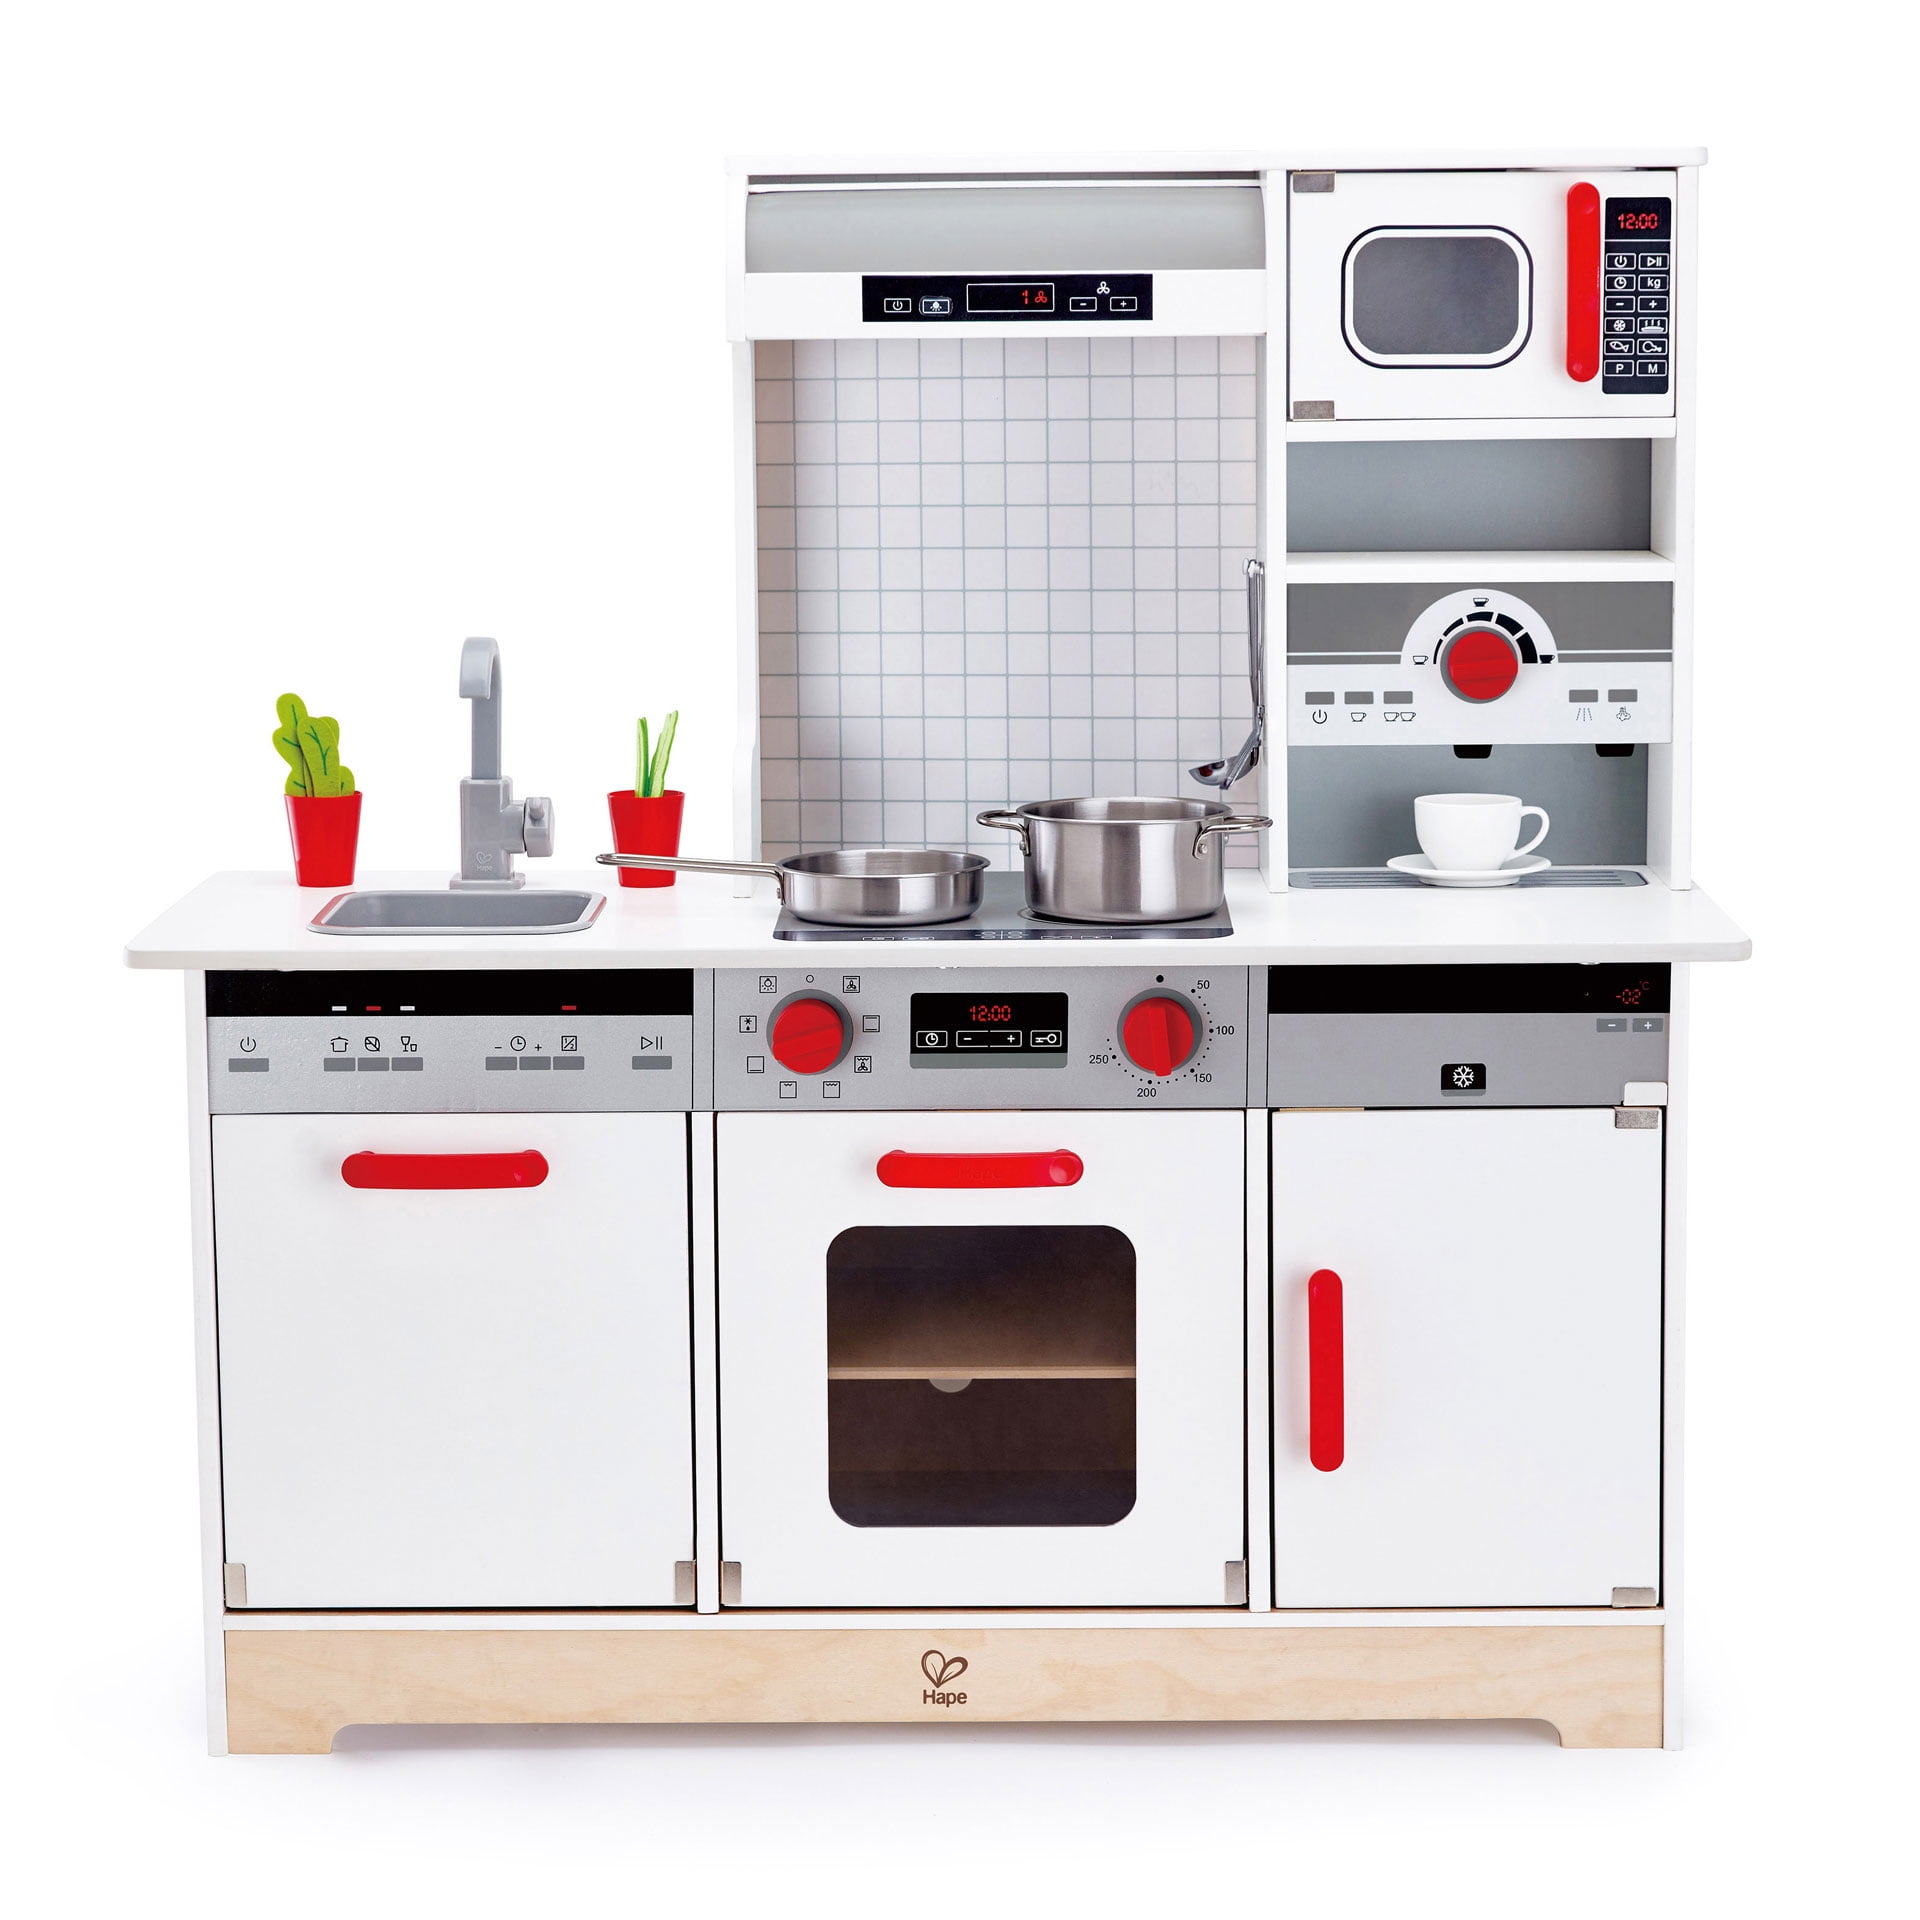 Toddler Play Kitchen Set : KidKraft Espresso Toddler Play Kitchen with Metal - Find play